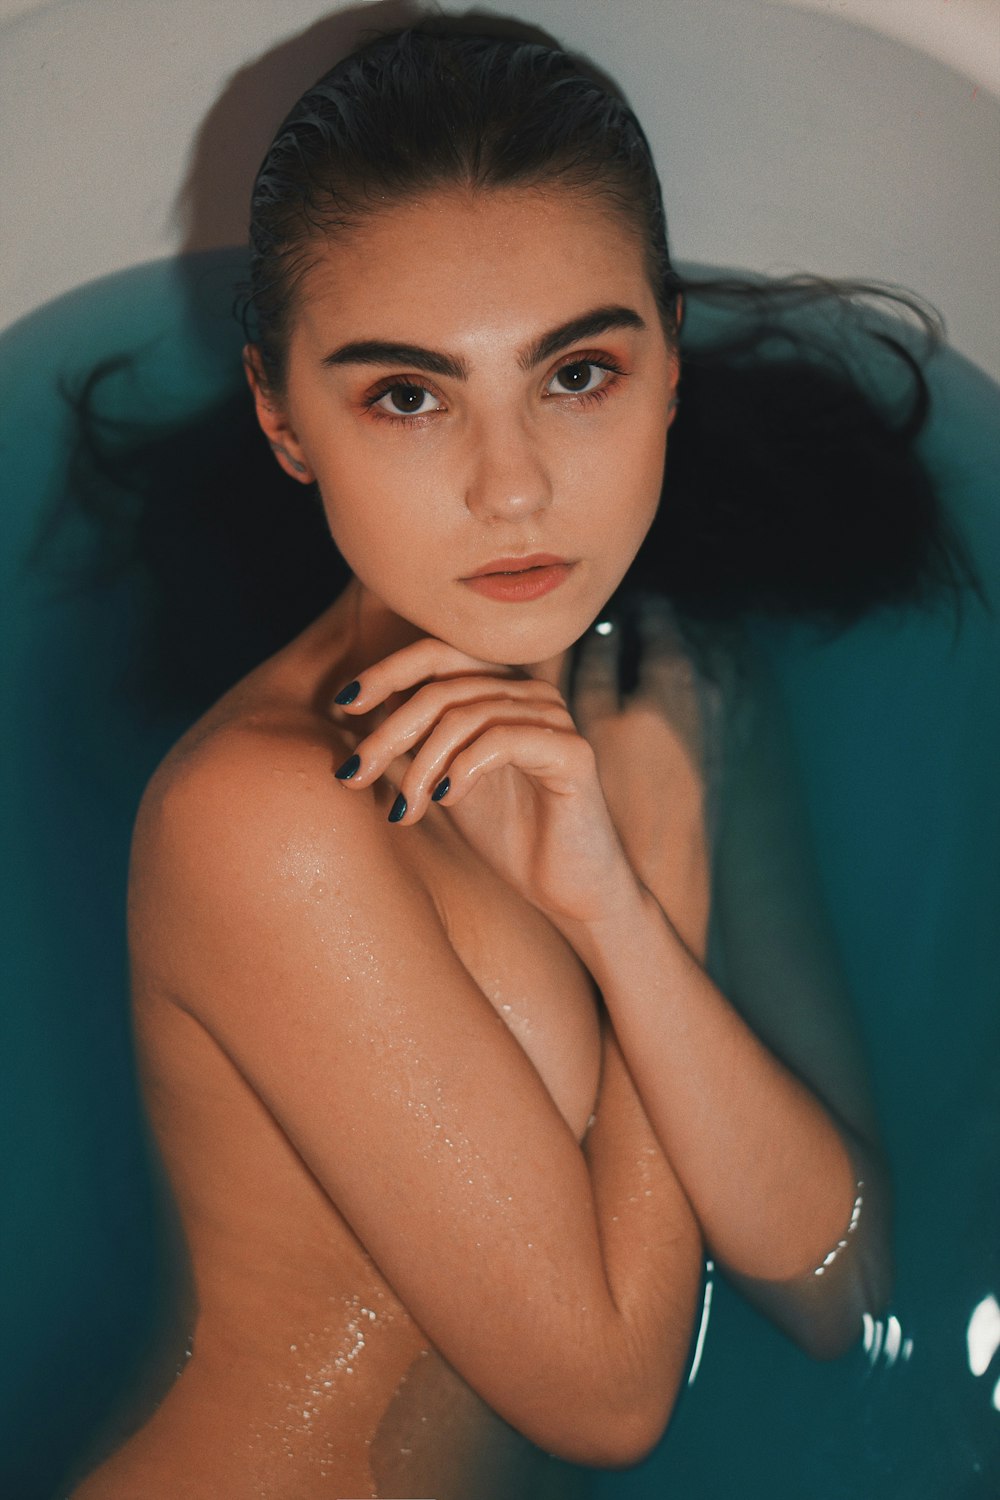 half naked woman on bathtub